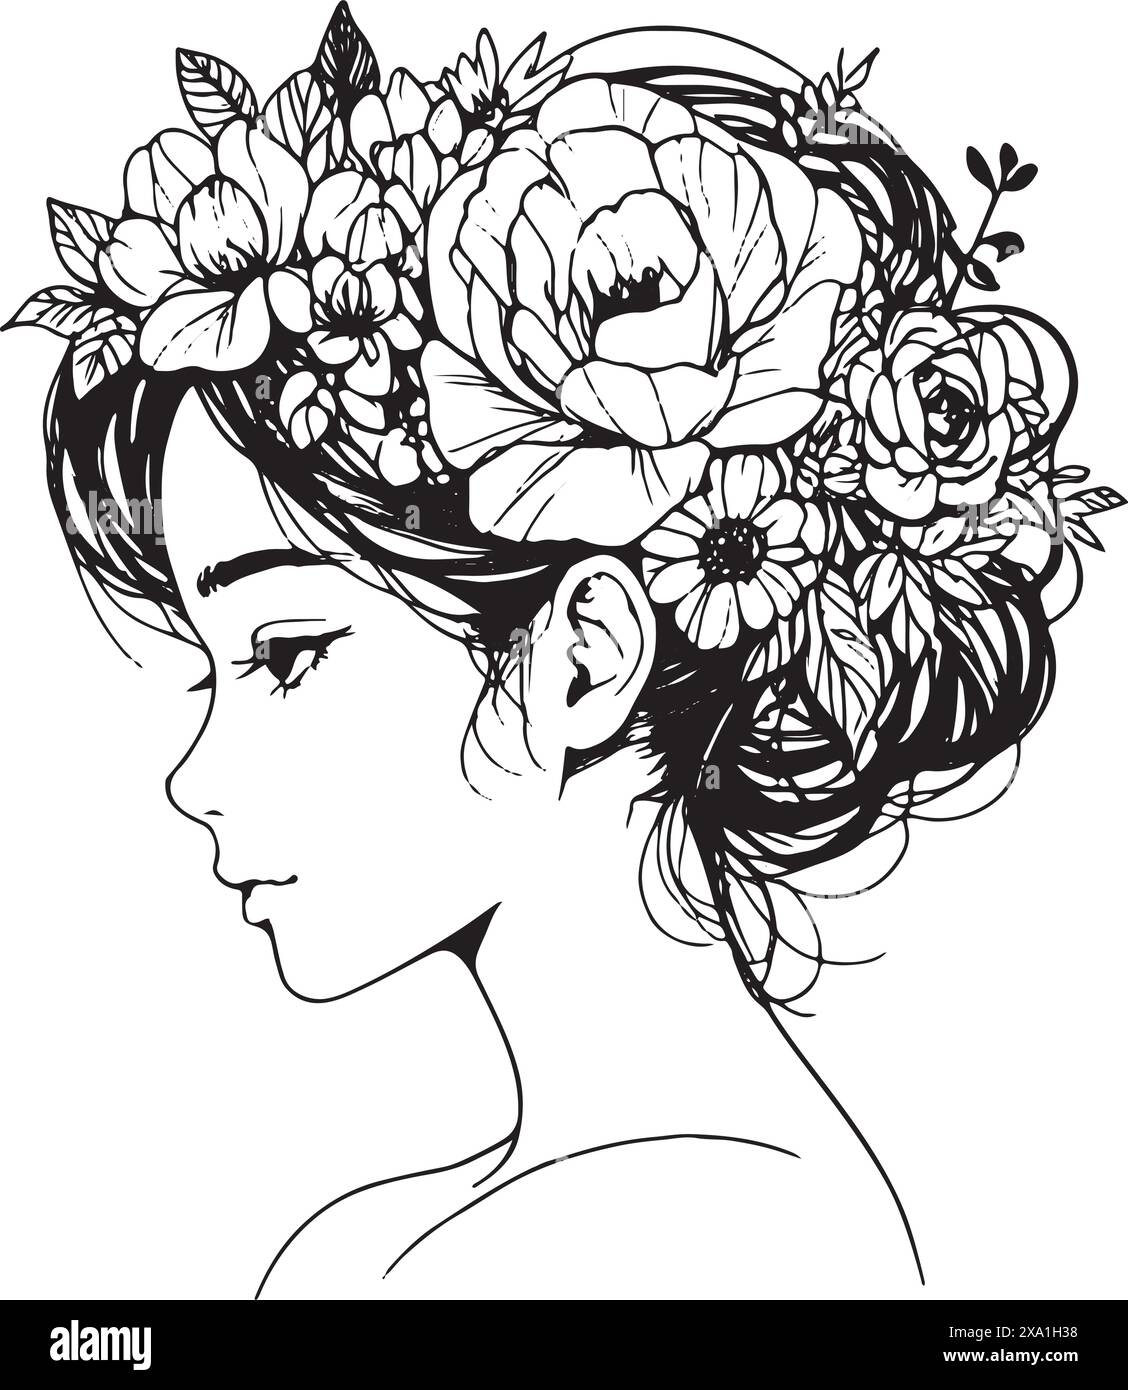 Schwarz-weiß, lineares Kunstwerk mit einer jungen Frau, die ihre Haare zurückgezogen hat und Blumen in der Frisur hat Stock Vektor